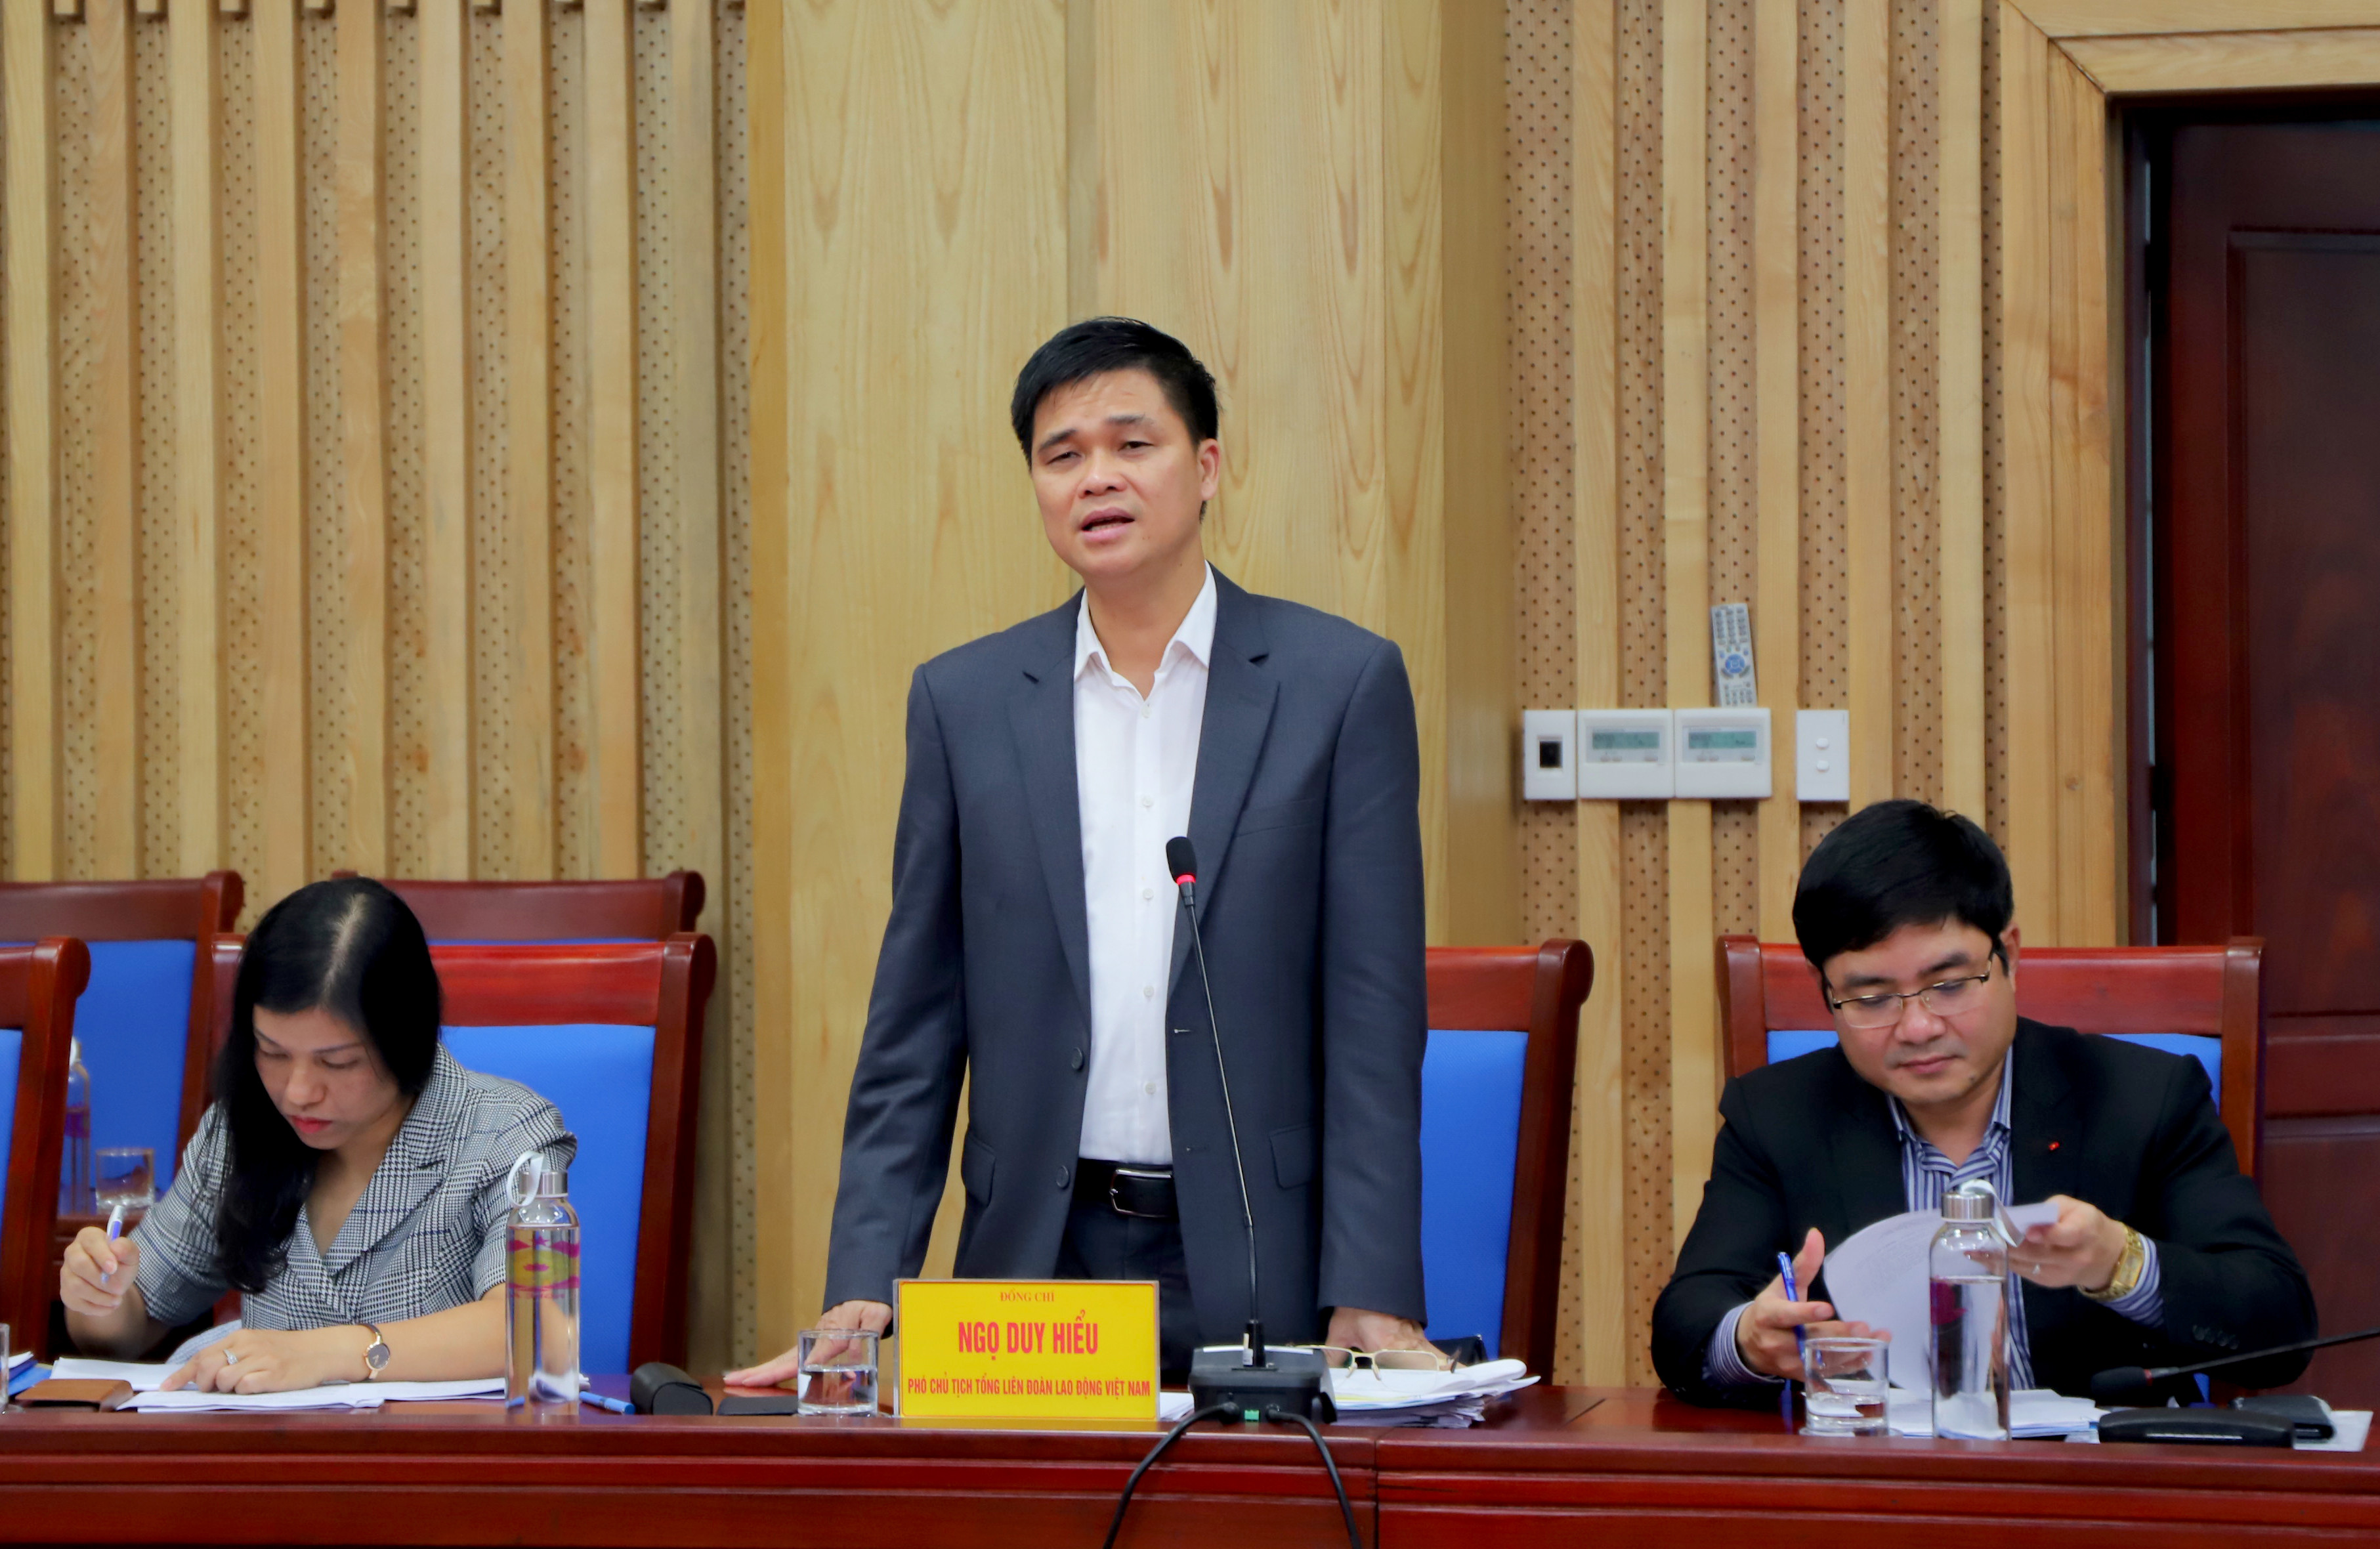 Đồng chí Ngọ Duy Hiểu - Phó Chủ tịch Tổng LĐLĐ Việt Nam kết luận cuộc làm việc. Ảnh: Thành Duy